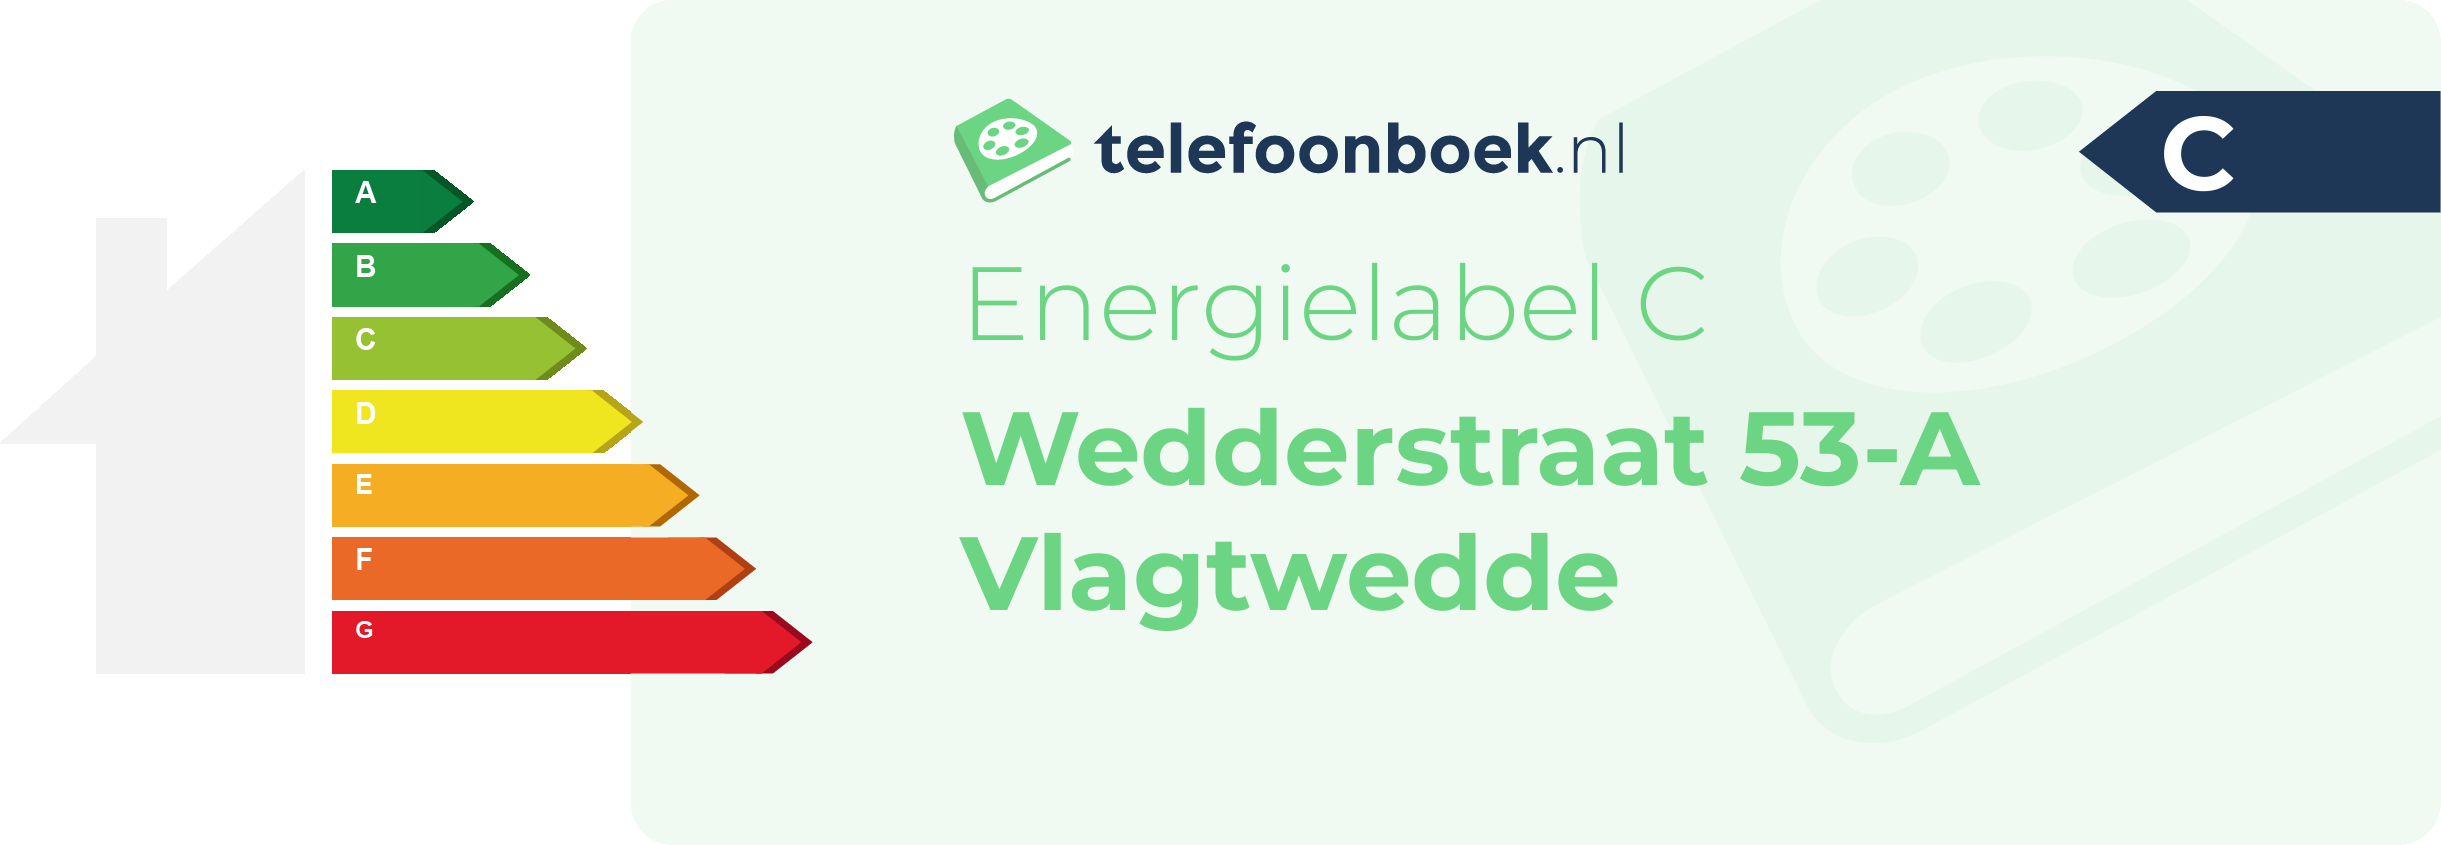 Energielabel Wedderstraat 53-A Vlagtwedde